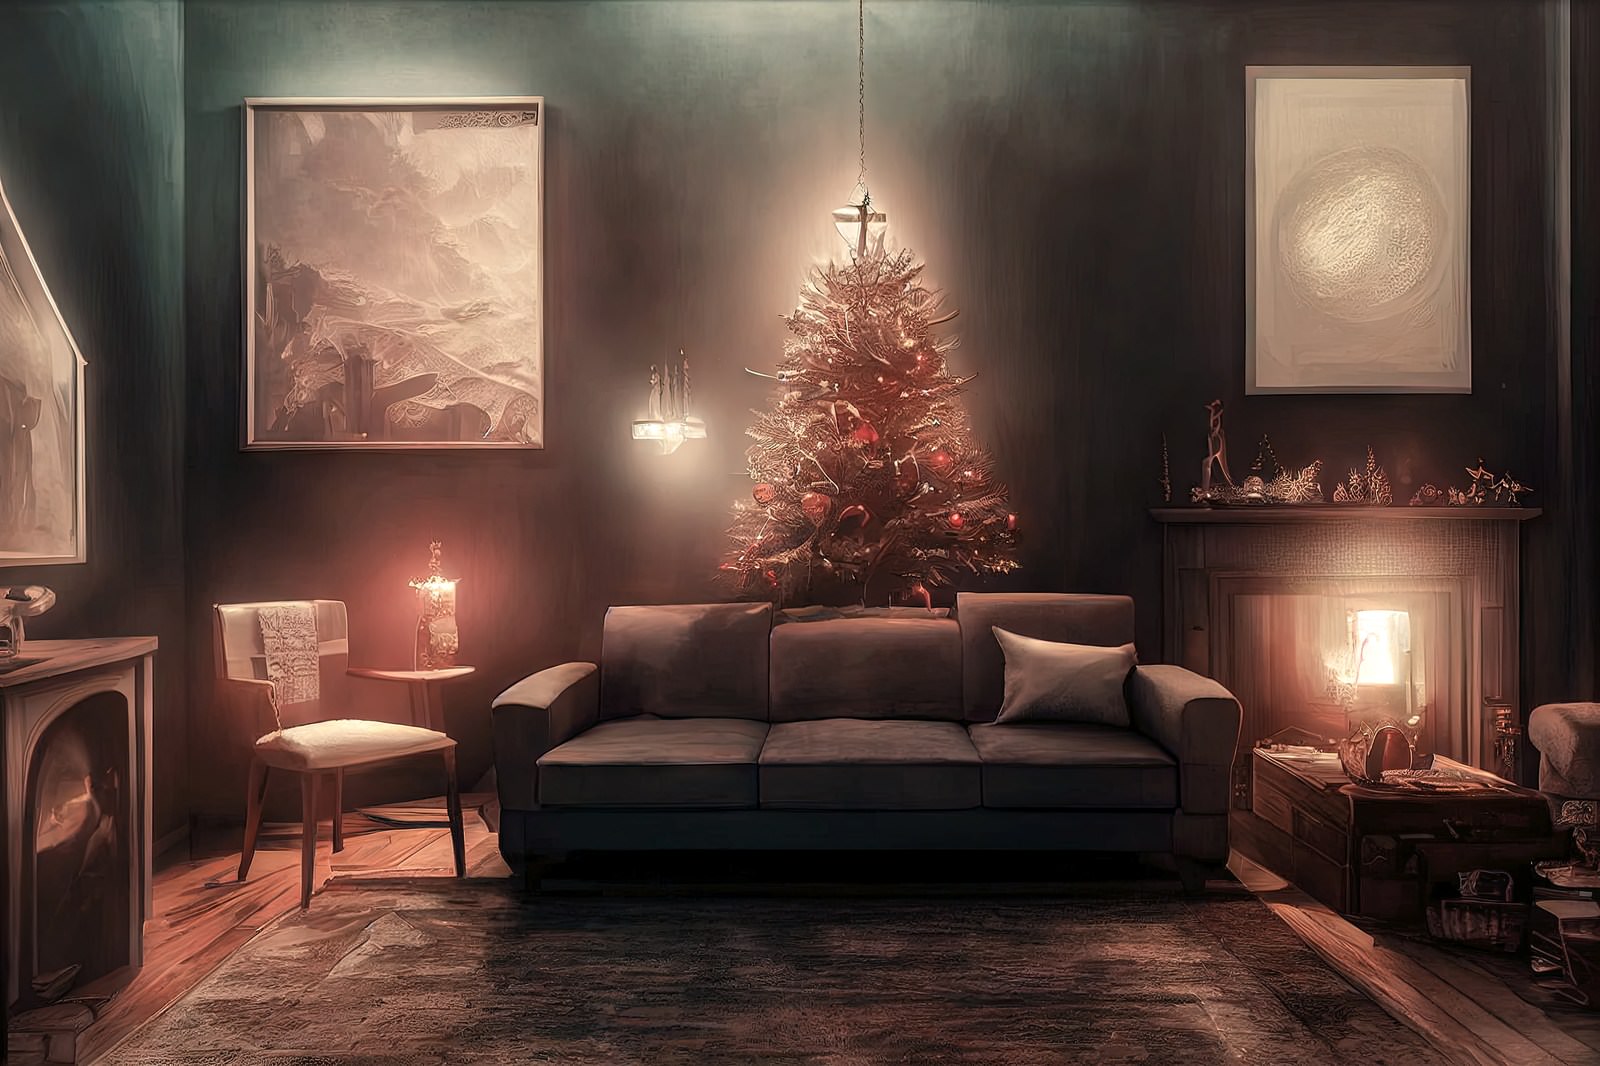 「クリスマスツリーの前のソファー | フリー素材のぱくたそ」の写真